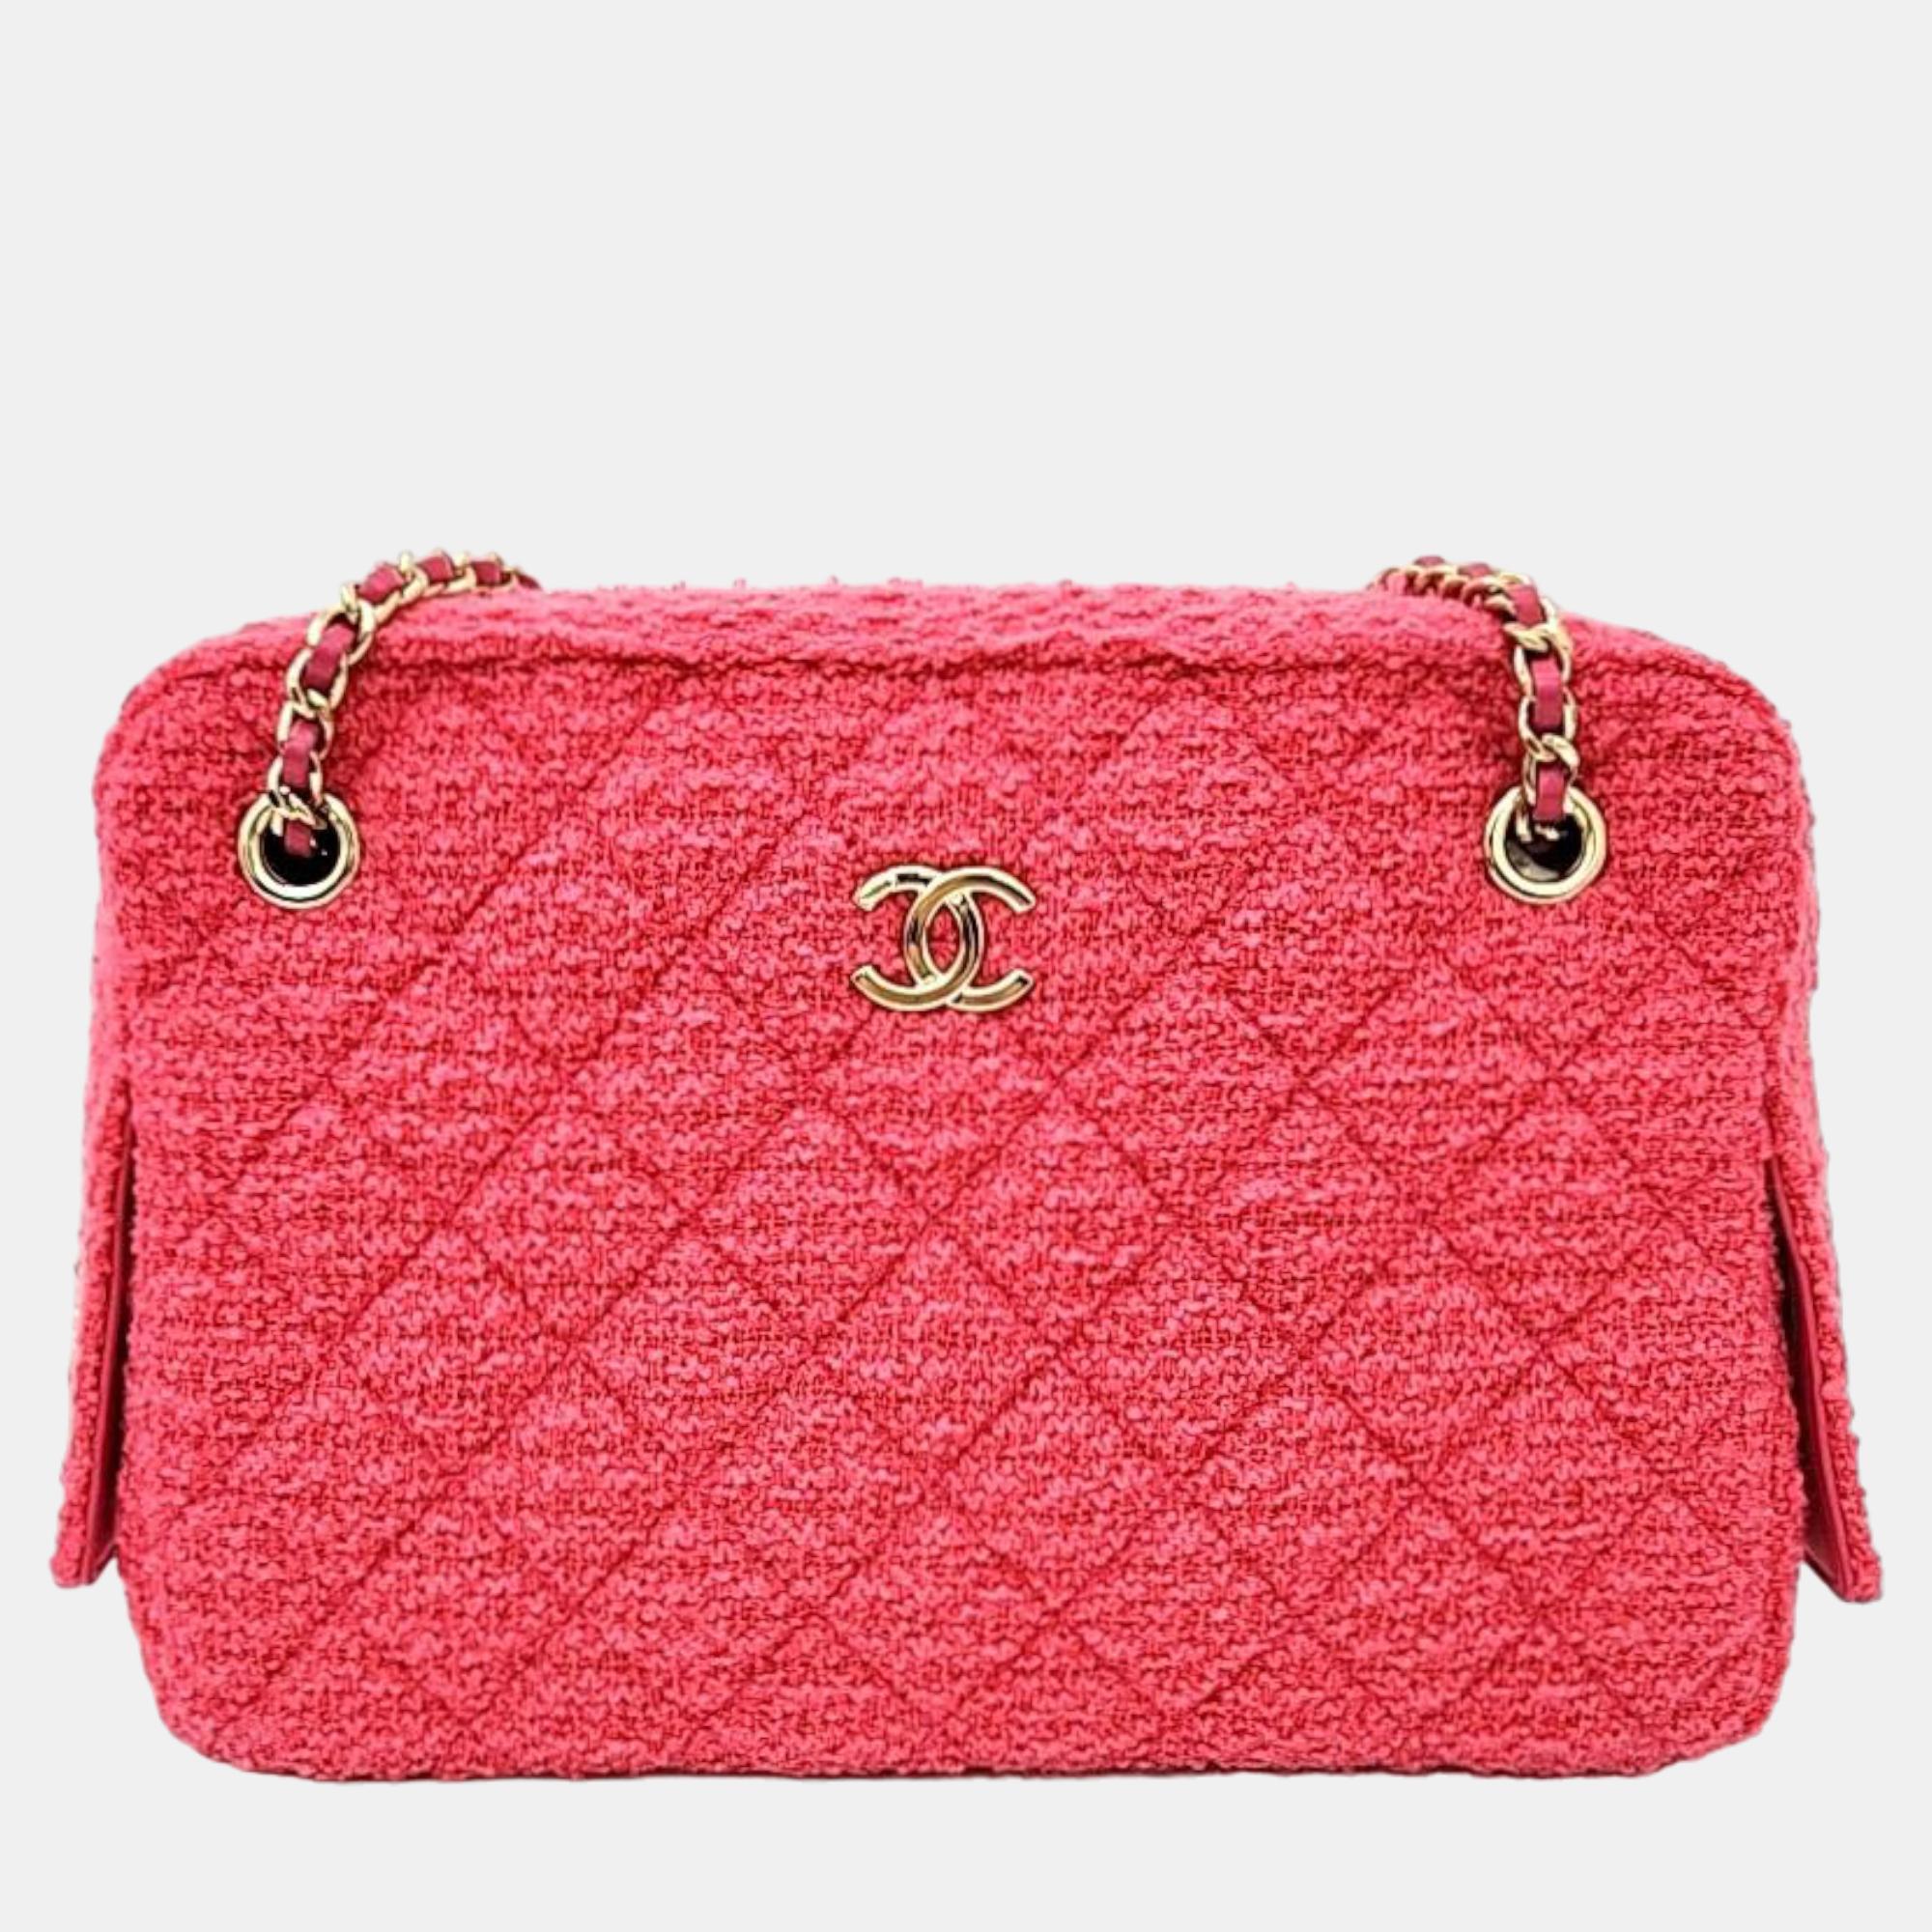 Chanel pink leather tweed camera shoulder bag